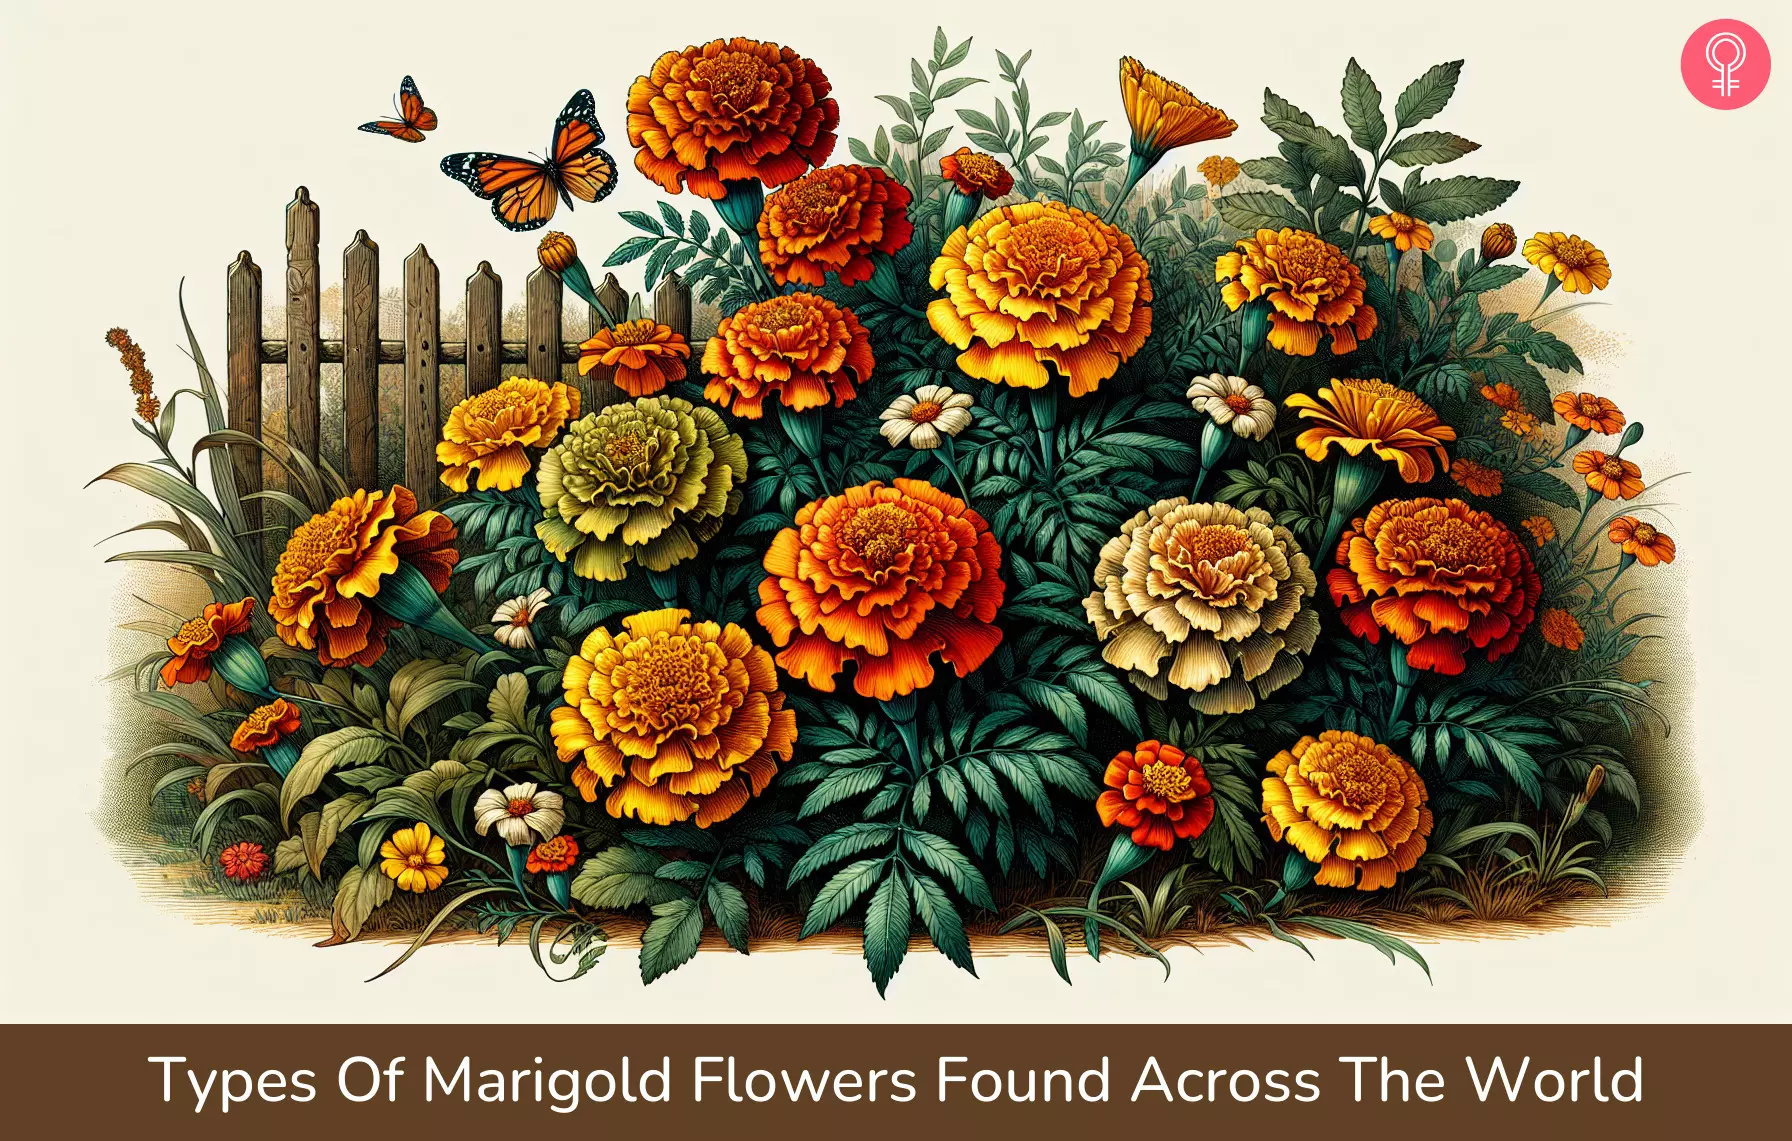 marigold flowers_illustration